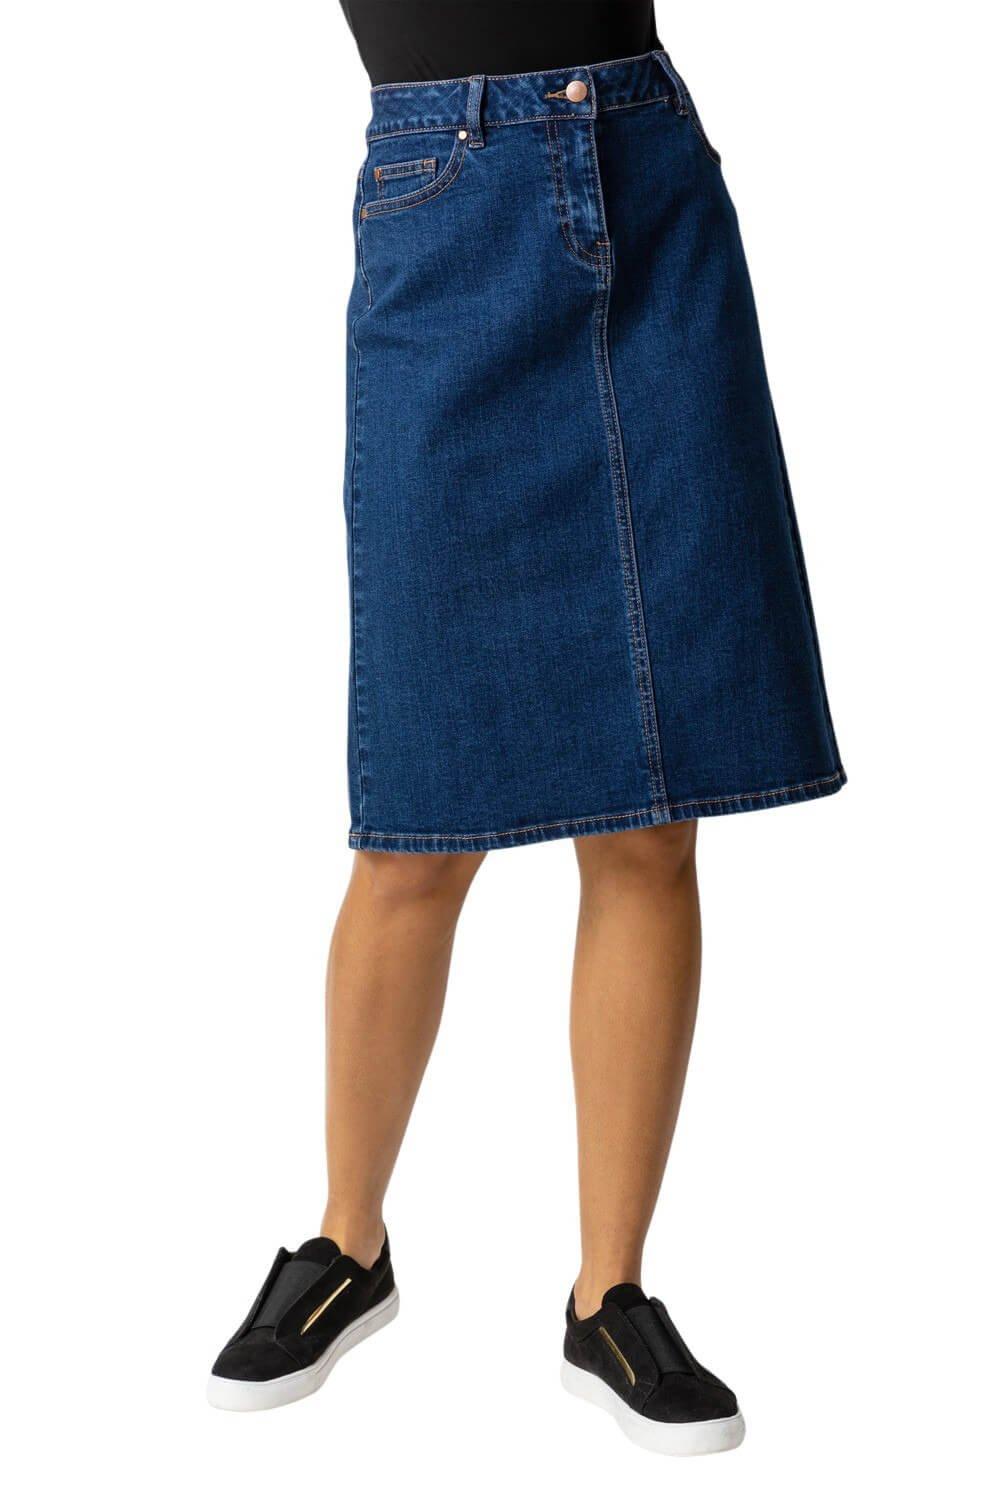 юбка laredoute юбка короткая из джинсовой ткани s синий Юбка из хлопковой джинсовой ткани стрейч Roman, синий